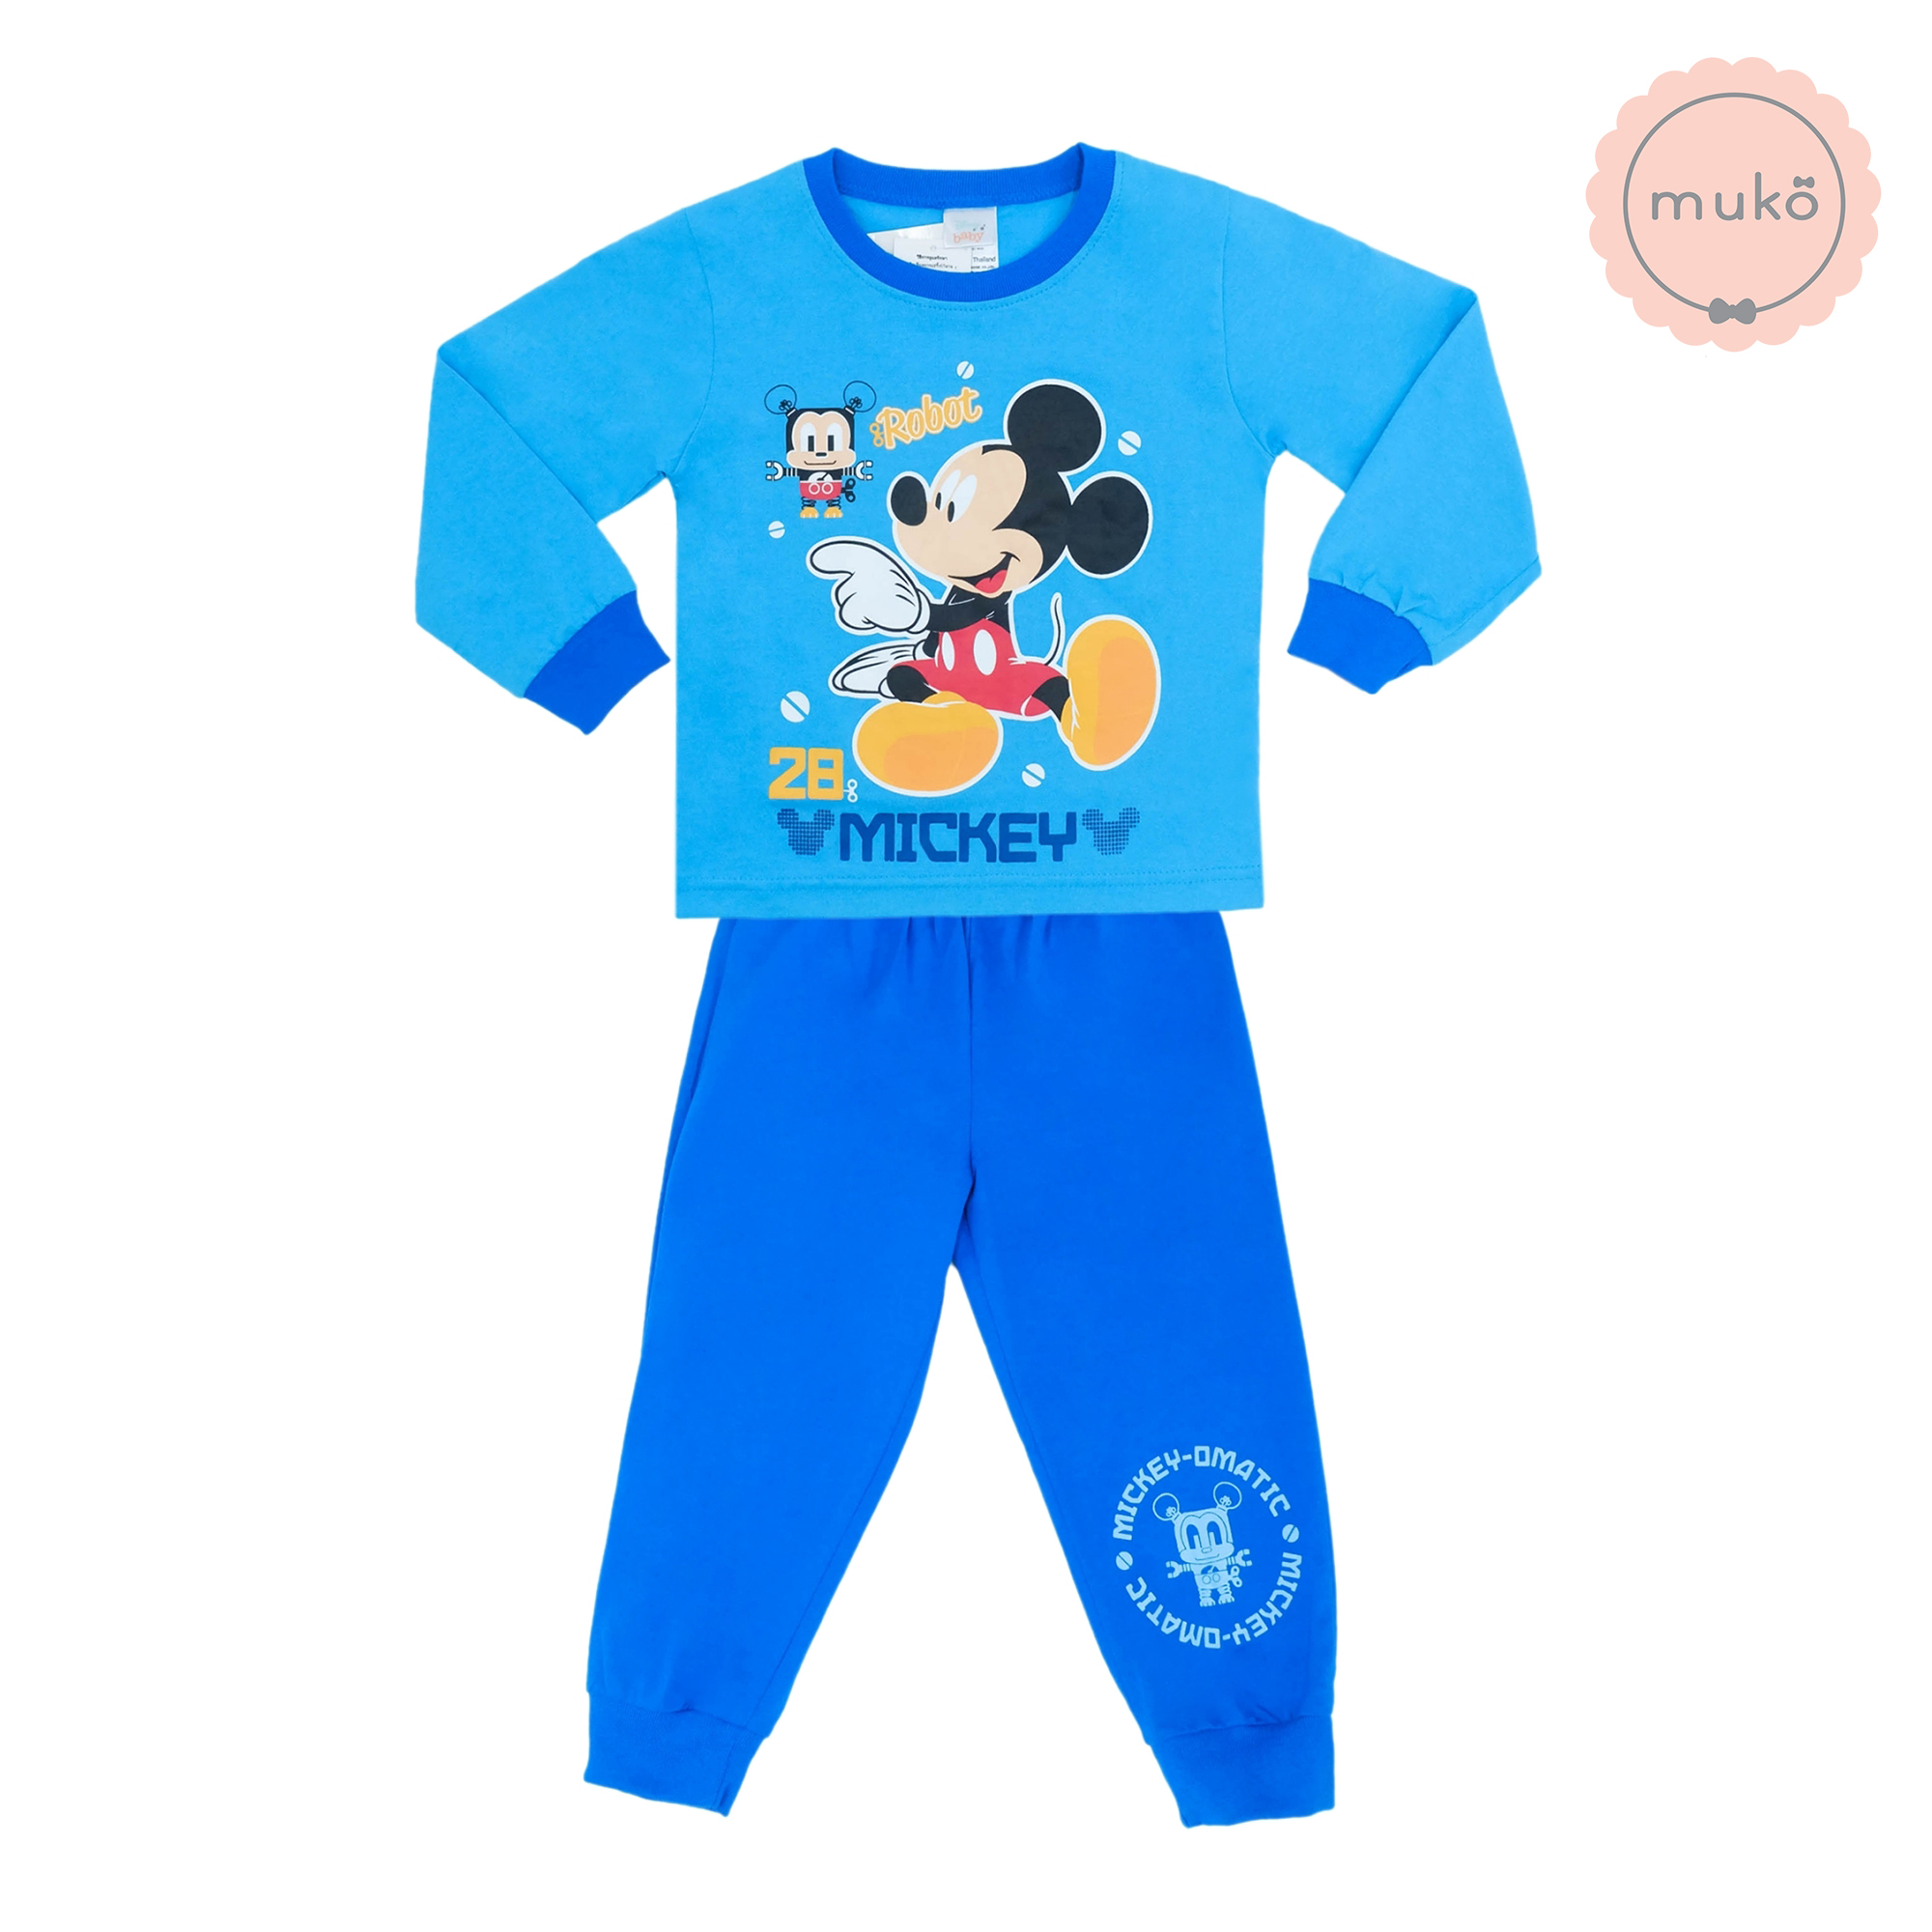 ชุดเด็ก 6 เดือน - 1 ขวบ แขนยาว-ขายาว (Size 1) DMK127-02-3-Blue 1 ลาย มิกกี้ เมาส์ Mickey Mouse สีฟ้า